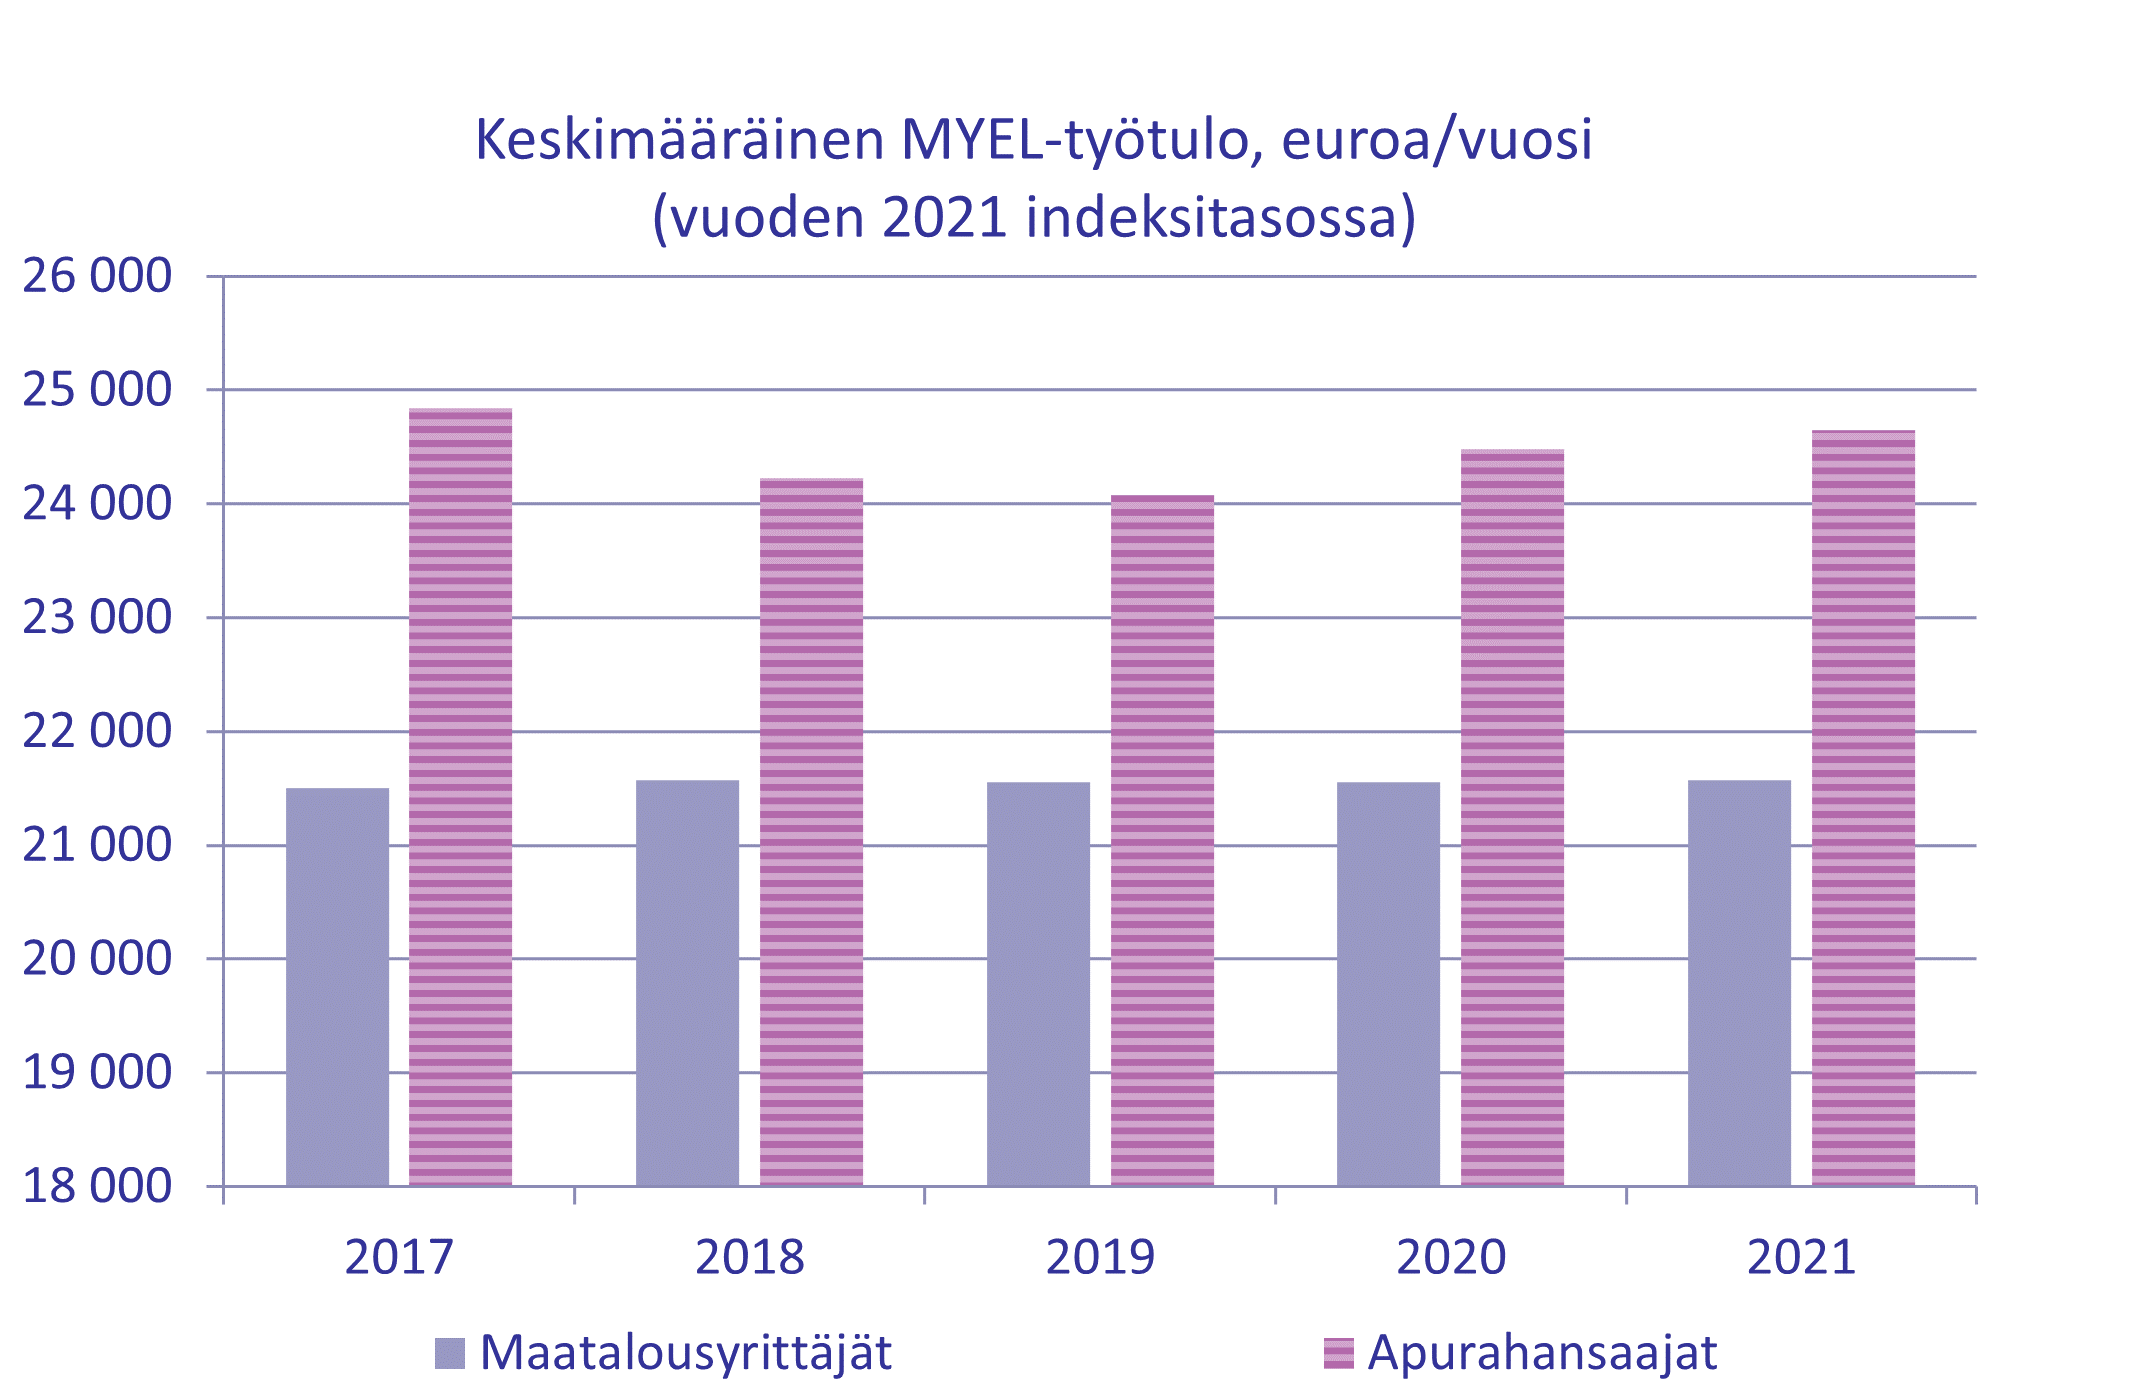 Kuva maatalousyrittäjien ja apurahansaajien keskimääräisen MYEL-työtulon kehityksestä vuoden 2021 indeksitasos-sa. Vertailuvuosina 2017-2020. Maatalousyrittäjien työtulo on pysytellyt noin 21 000 eurossa. Apurahansaajien työ-tulossa on aavistuksen enemmän vaihtelua, mutta pysytellyt noin 24 000 eurossa, korkeimmillaan vuonna 2017 ja alimmillaan vuonna 2019.